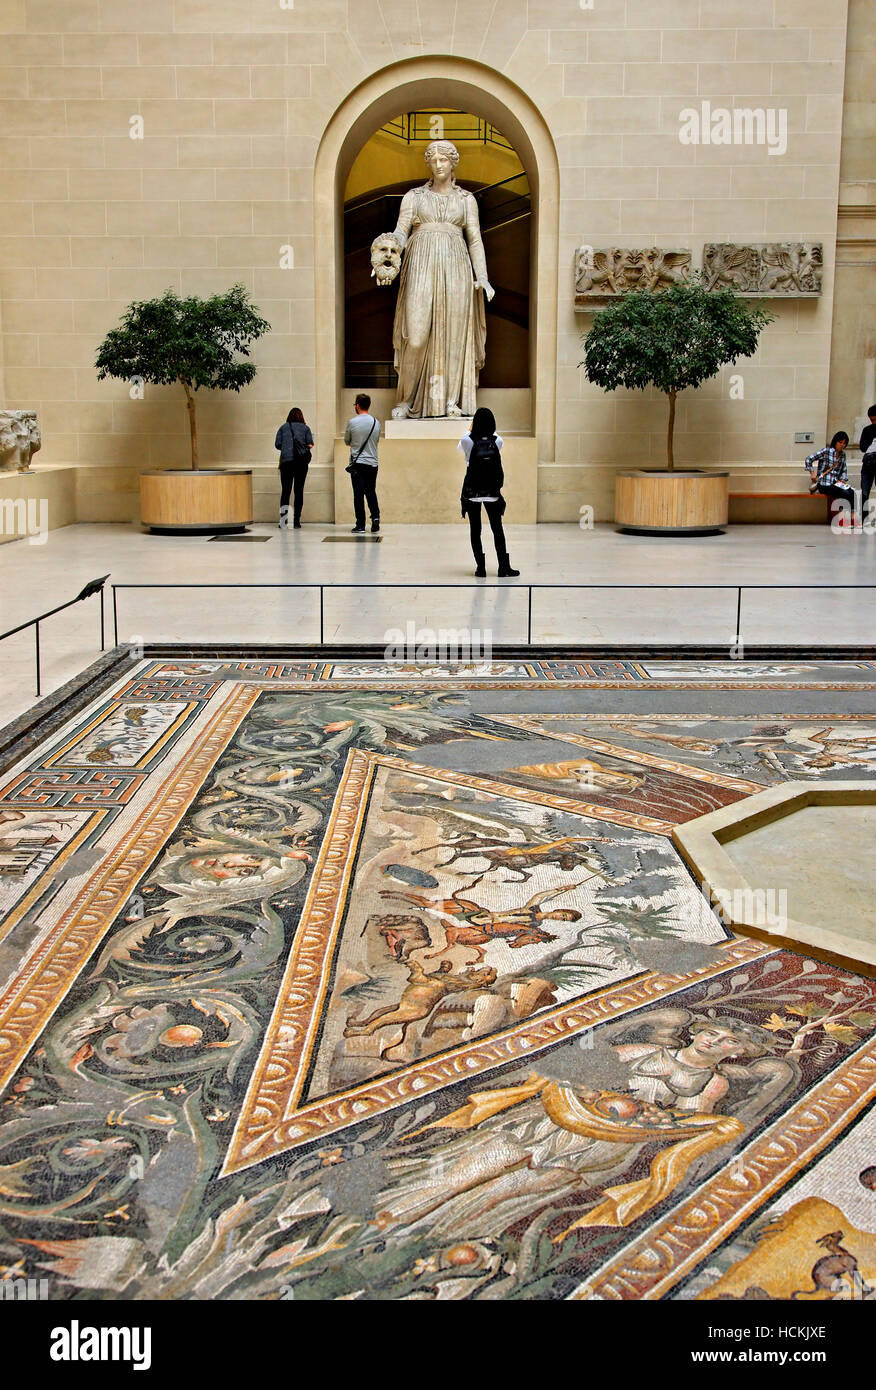 La Sfinge del cortile con il 'Seasons' pavimento a mosaico e una statua di Melpomene :, Denon ala, museo del Louvre di Parigi, Francia. Foto Stock